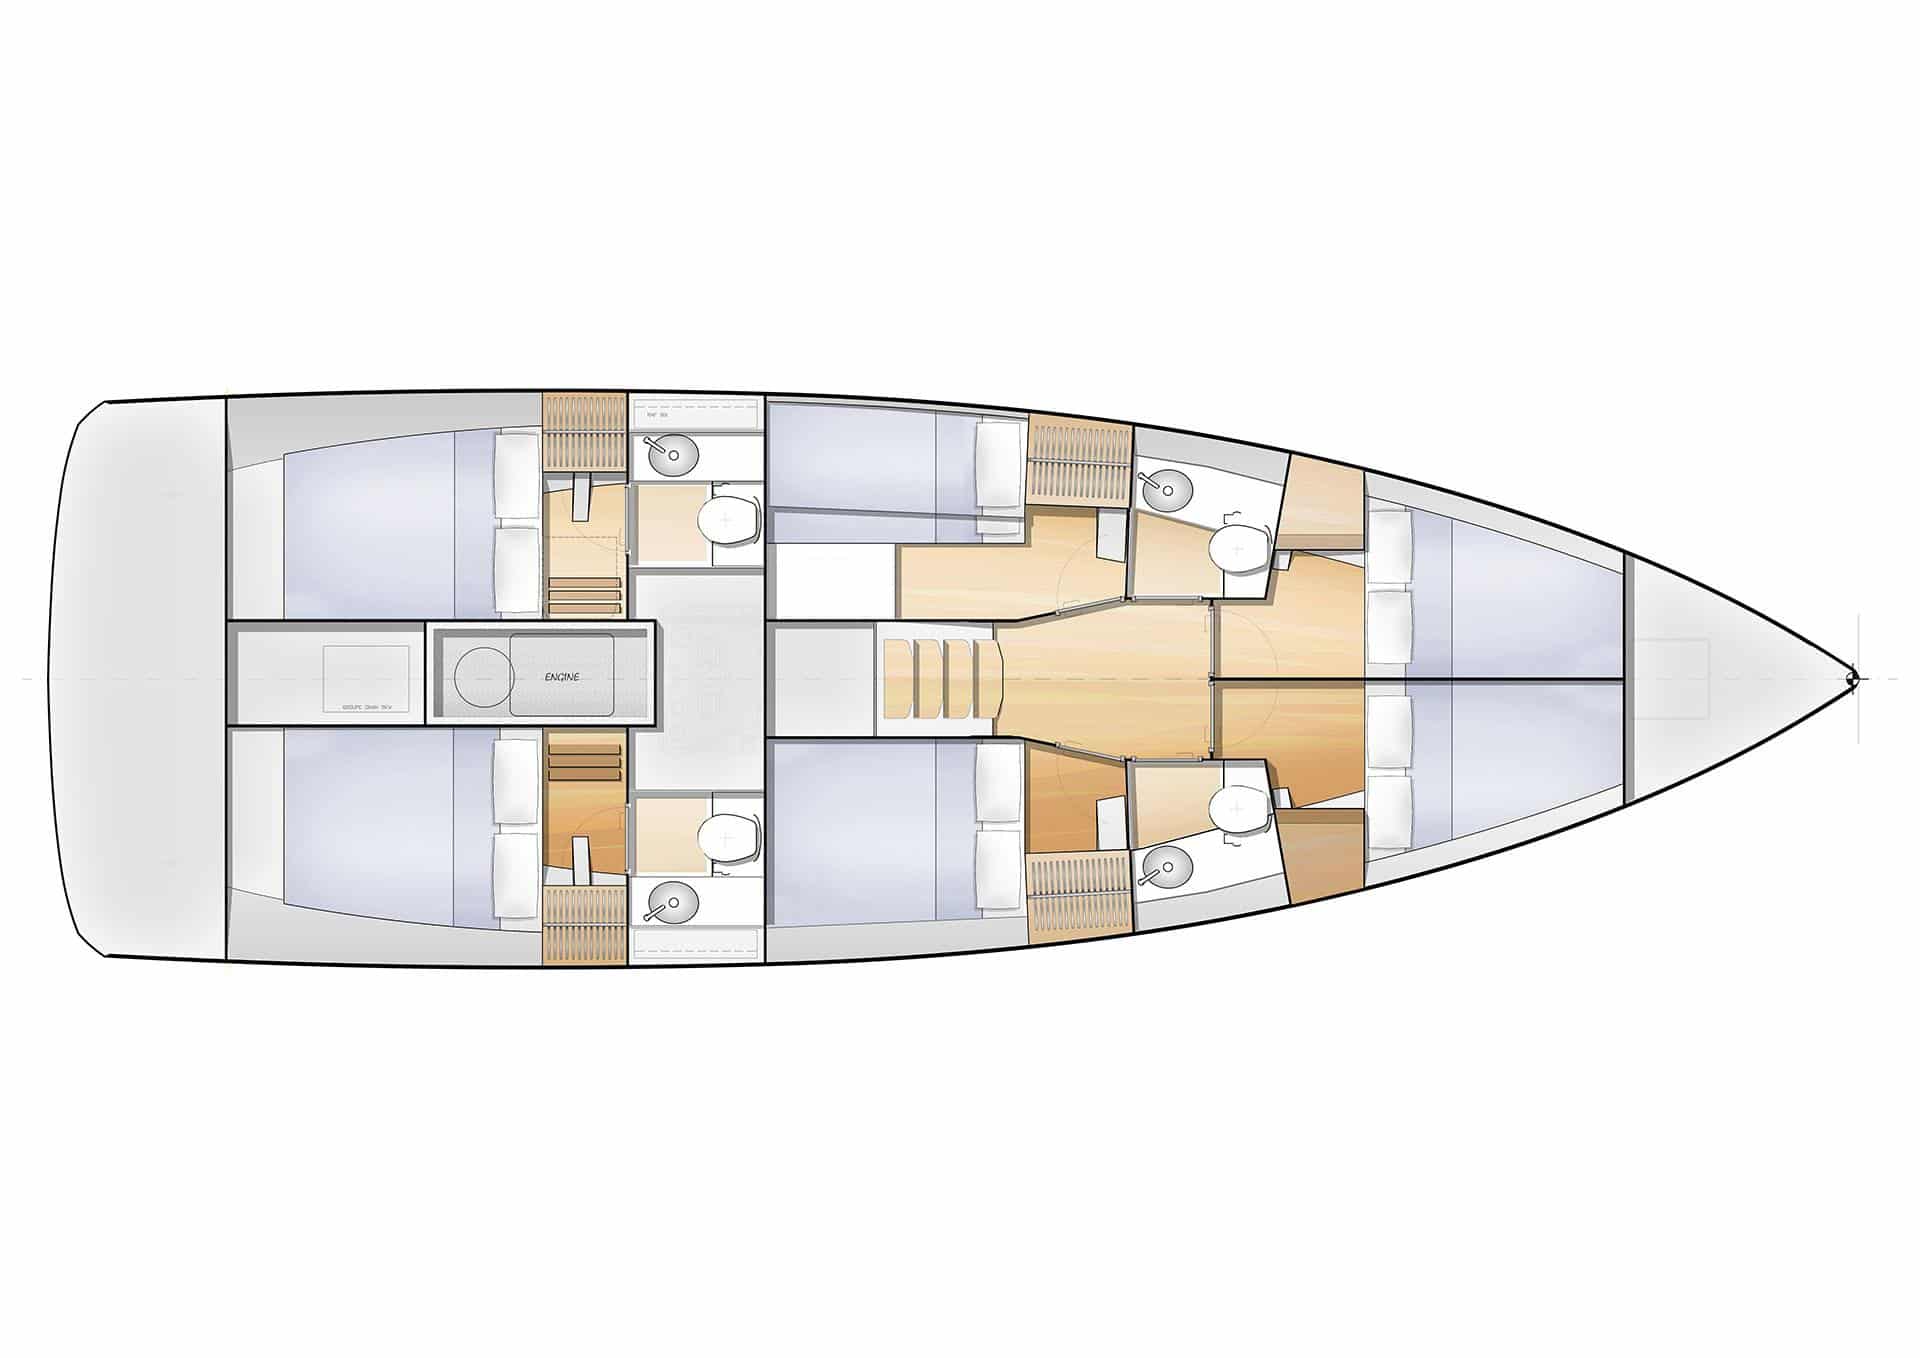 Draufsicht-Layoutdiagramm einer Yacht, das den Aufbau von Kabinen, Badezimmern, einer Küche und Wohnbereichen für einen Segelurlaub zeigt. Verschiedene Abschnitte sind mit Einrichtungsgegenständen wie Betten und Tischen gekennzeichnet.